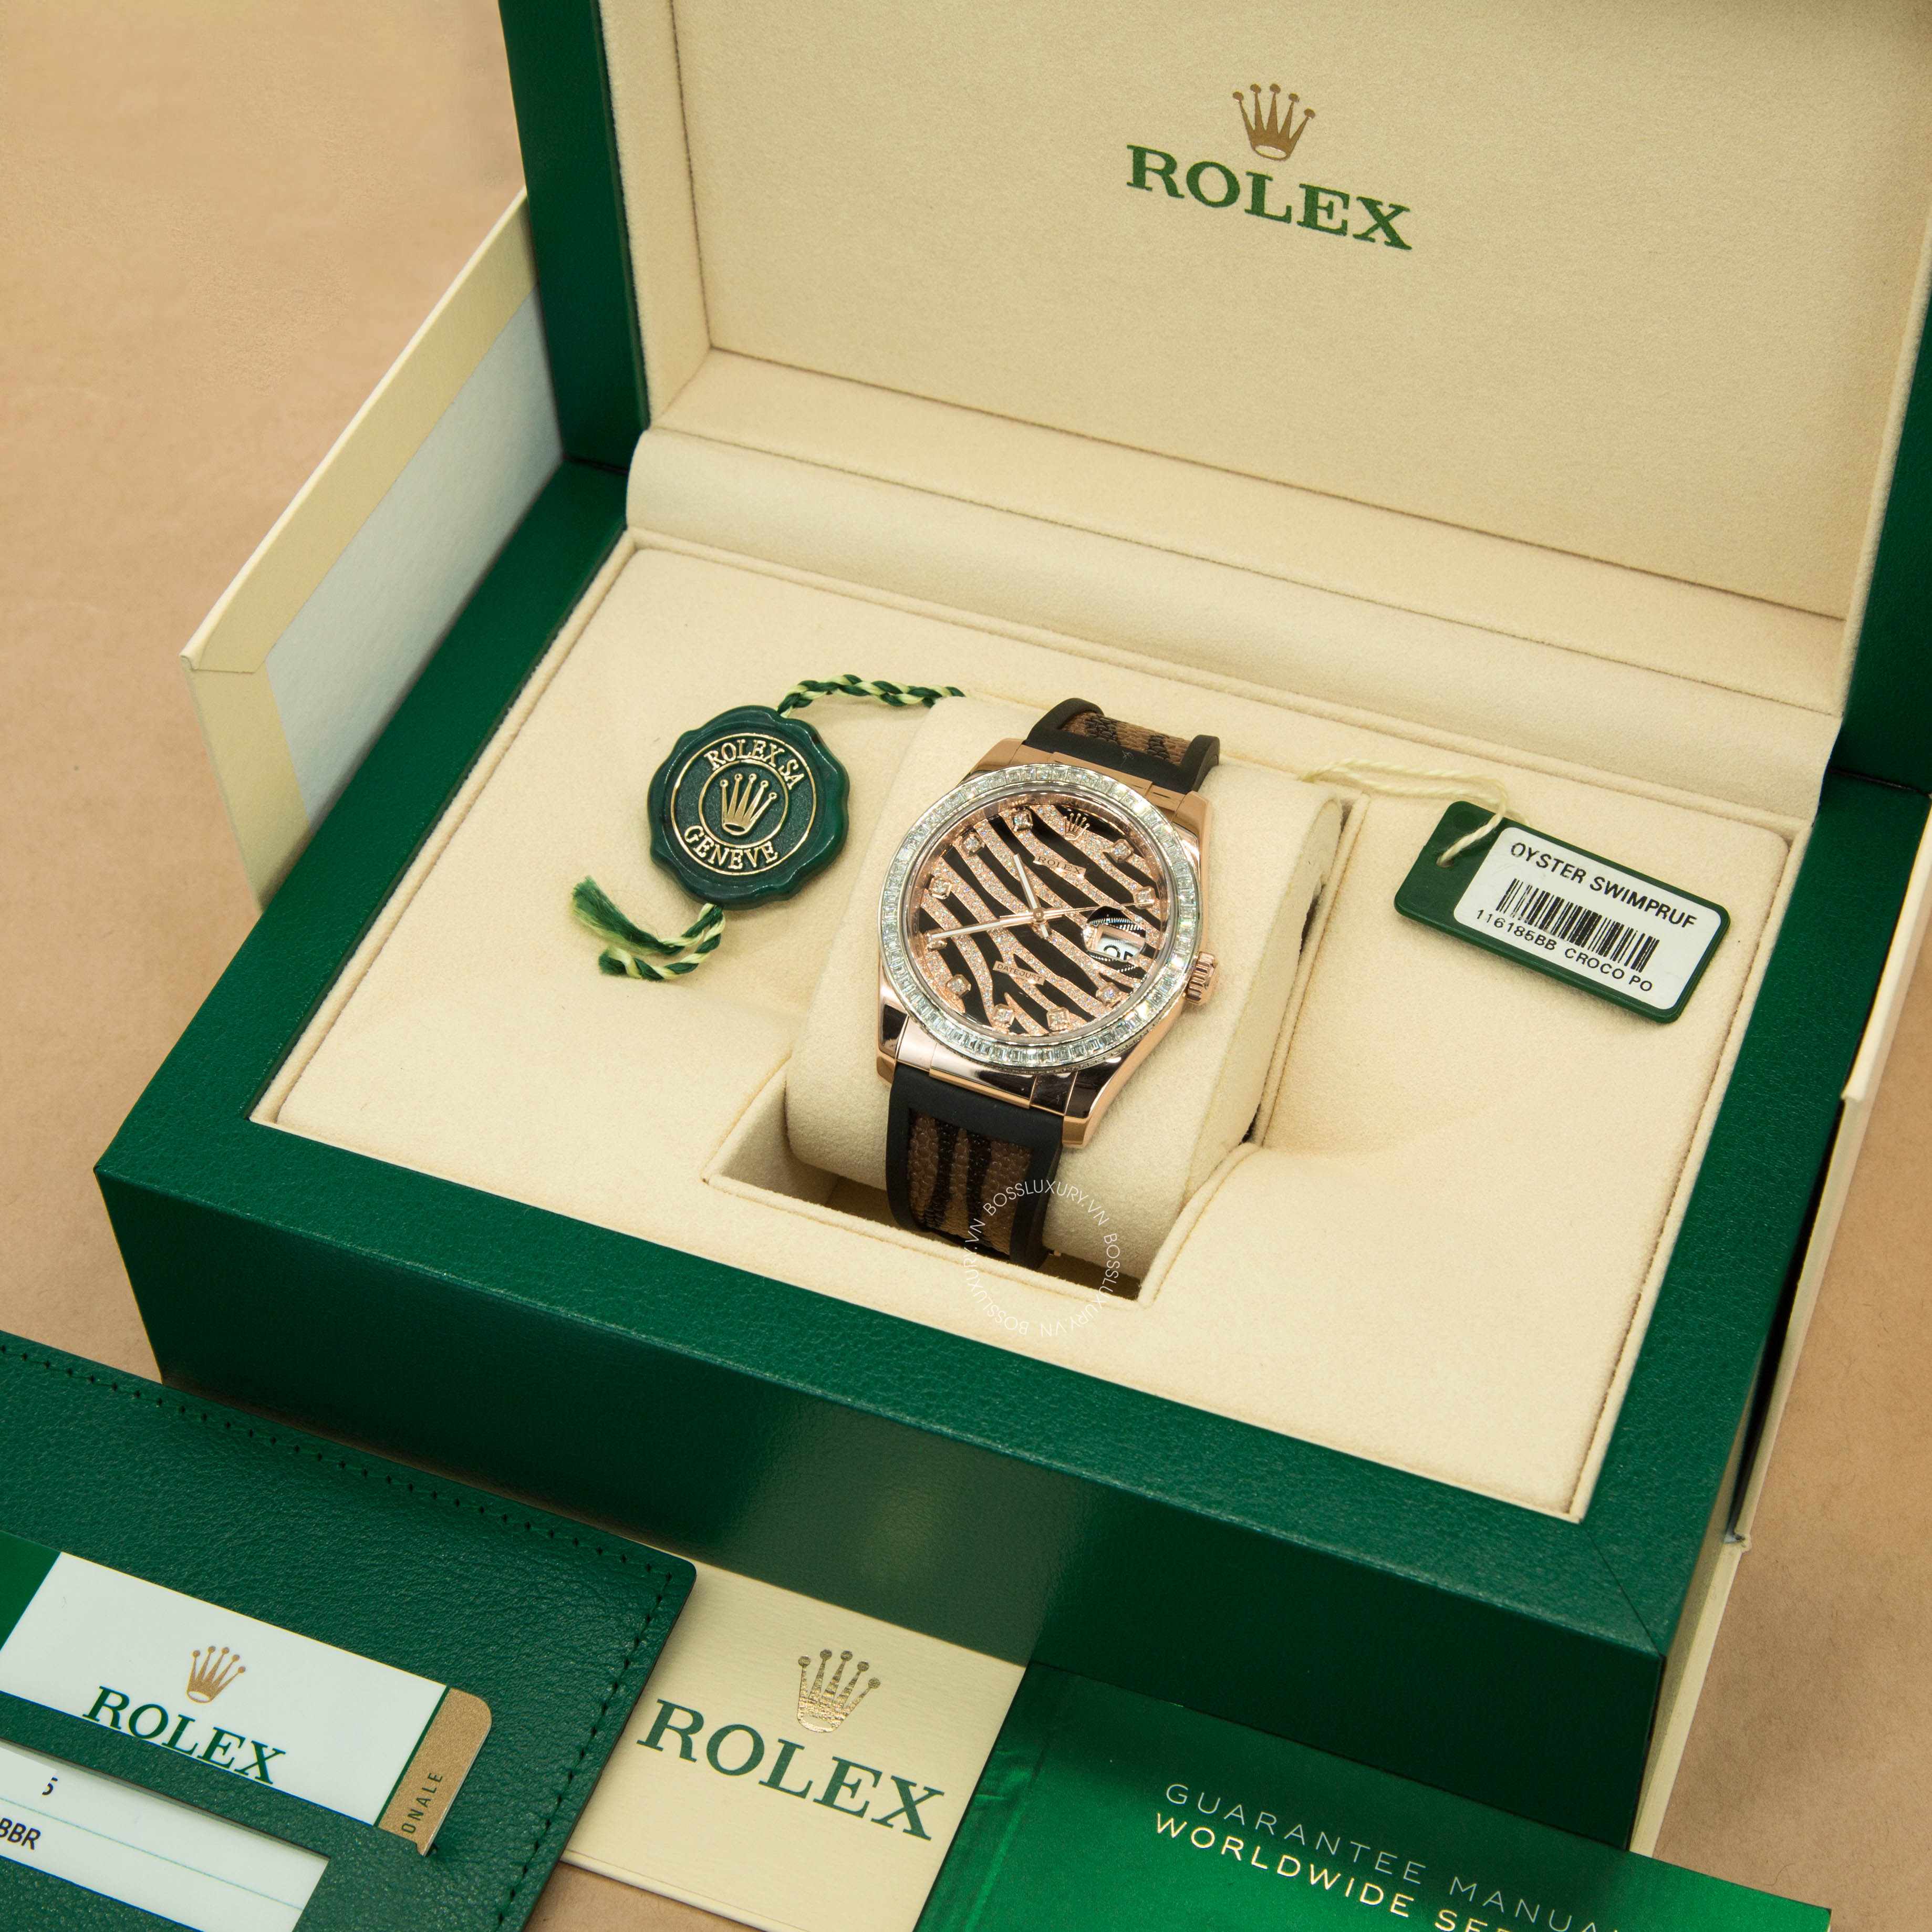 Review đồng hồ Rolex DateJust 36mm da cá đuối: Nổi bật với 2 màu chủ đạo vàng và đen